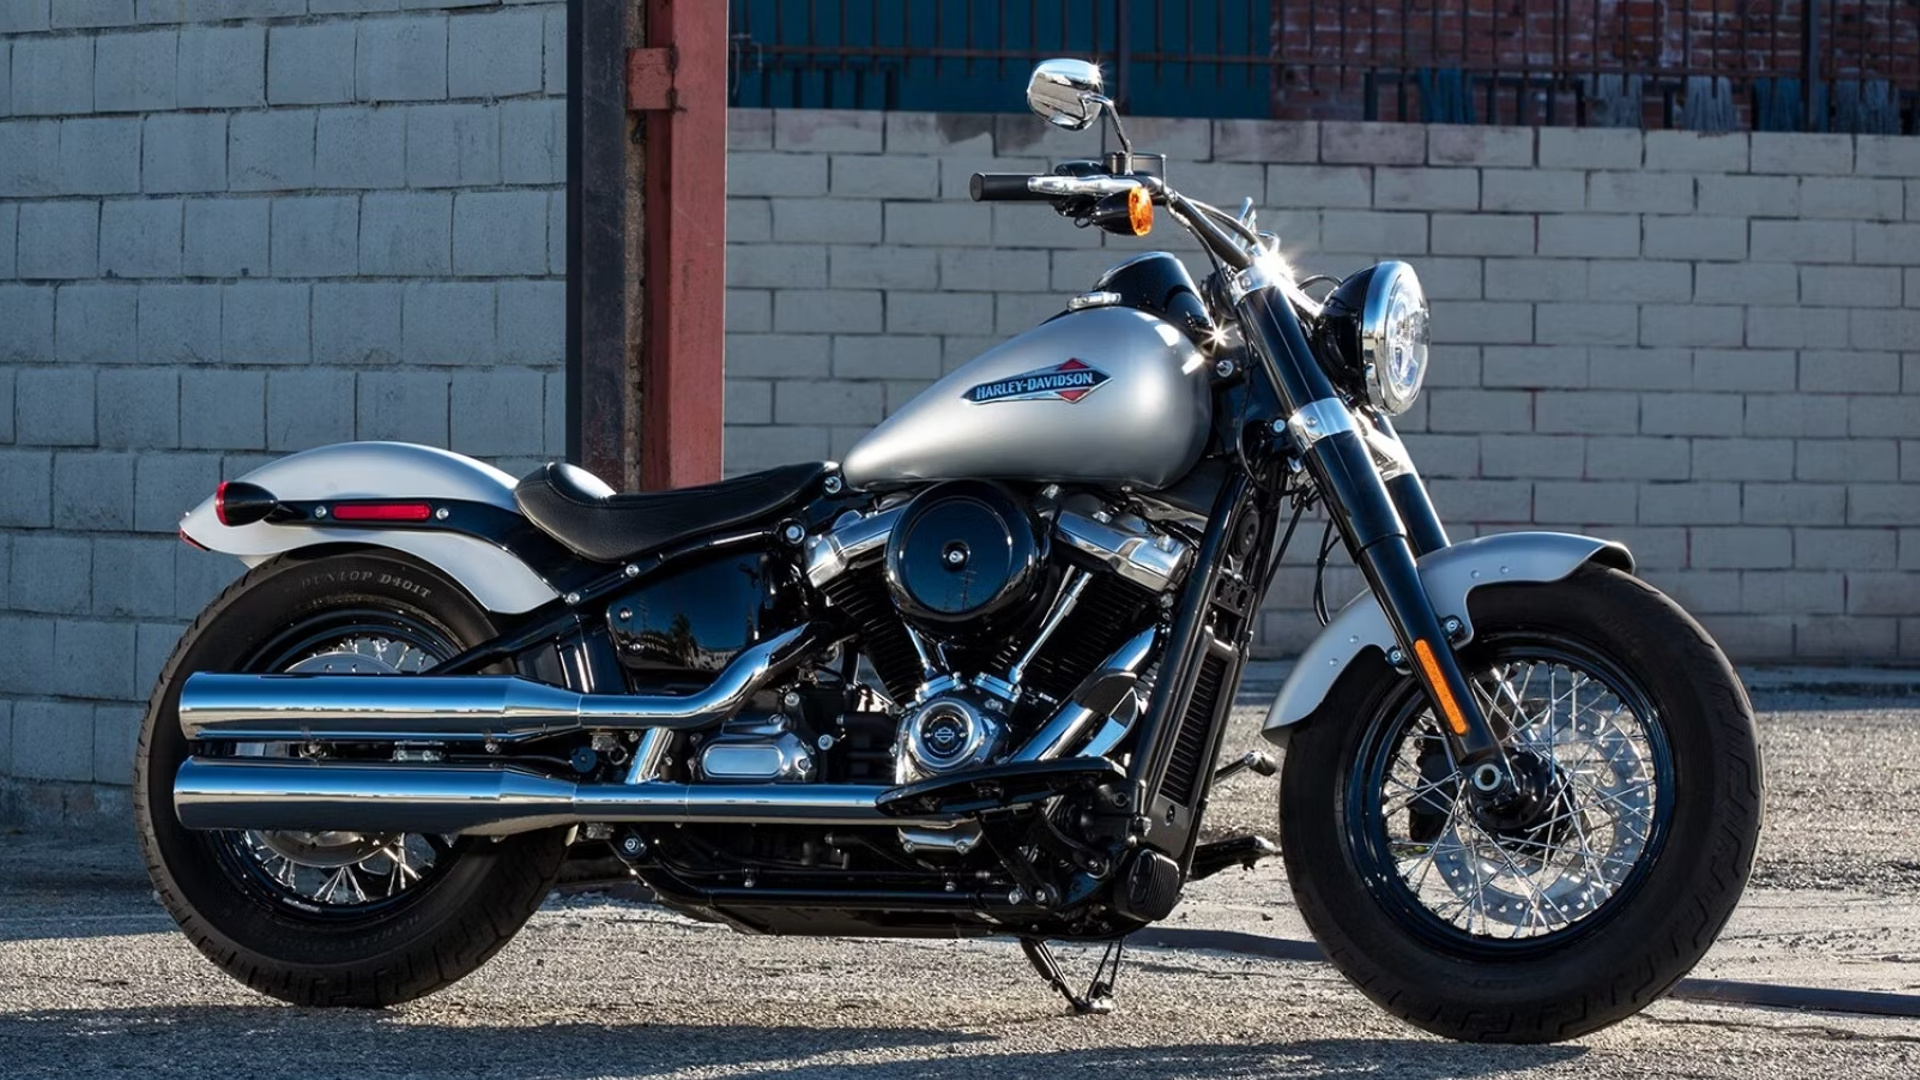 Springer Front end Handling? - Harley Davidson Forums